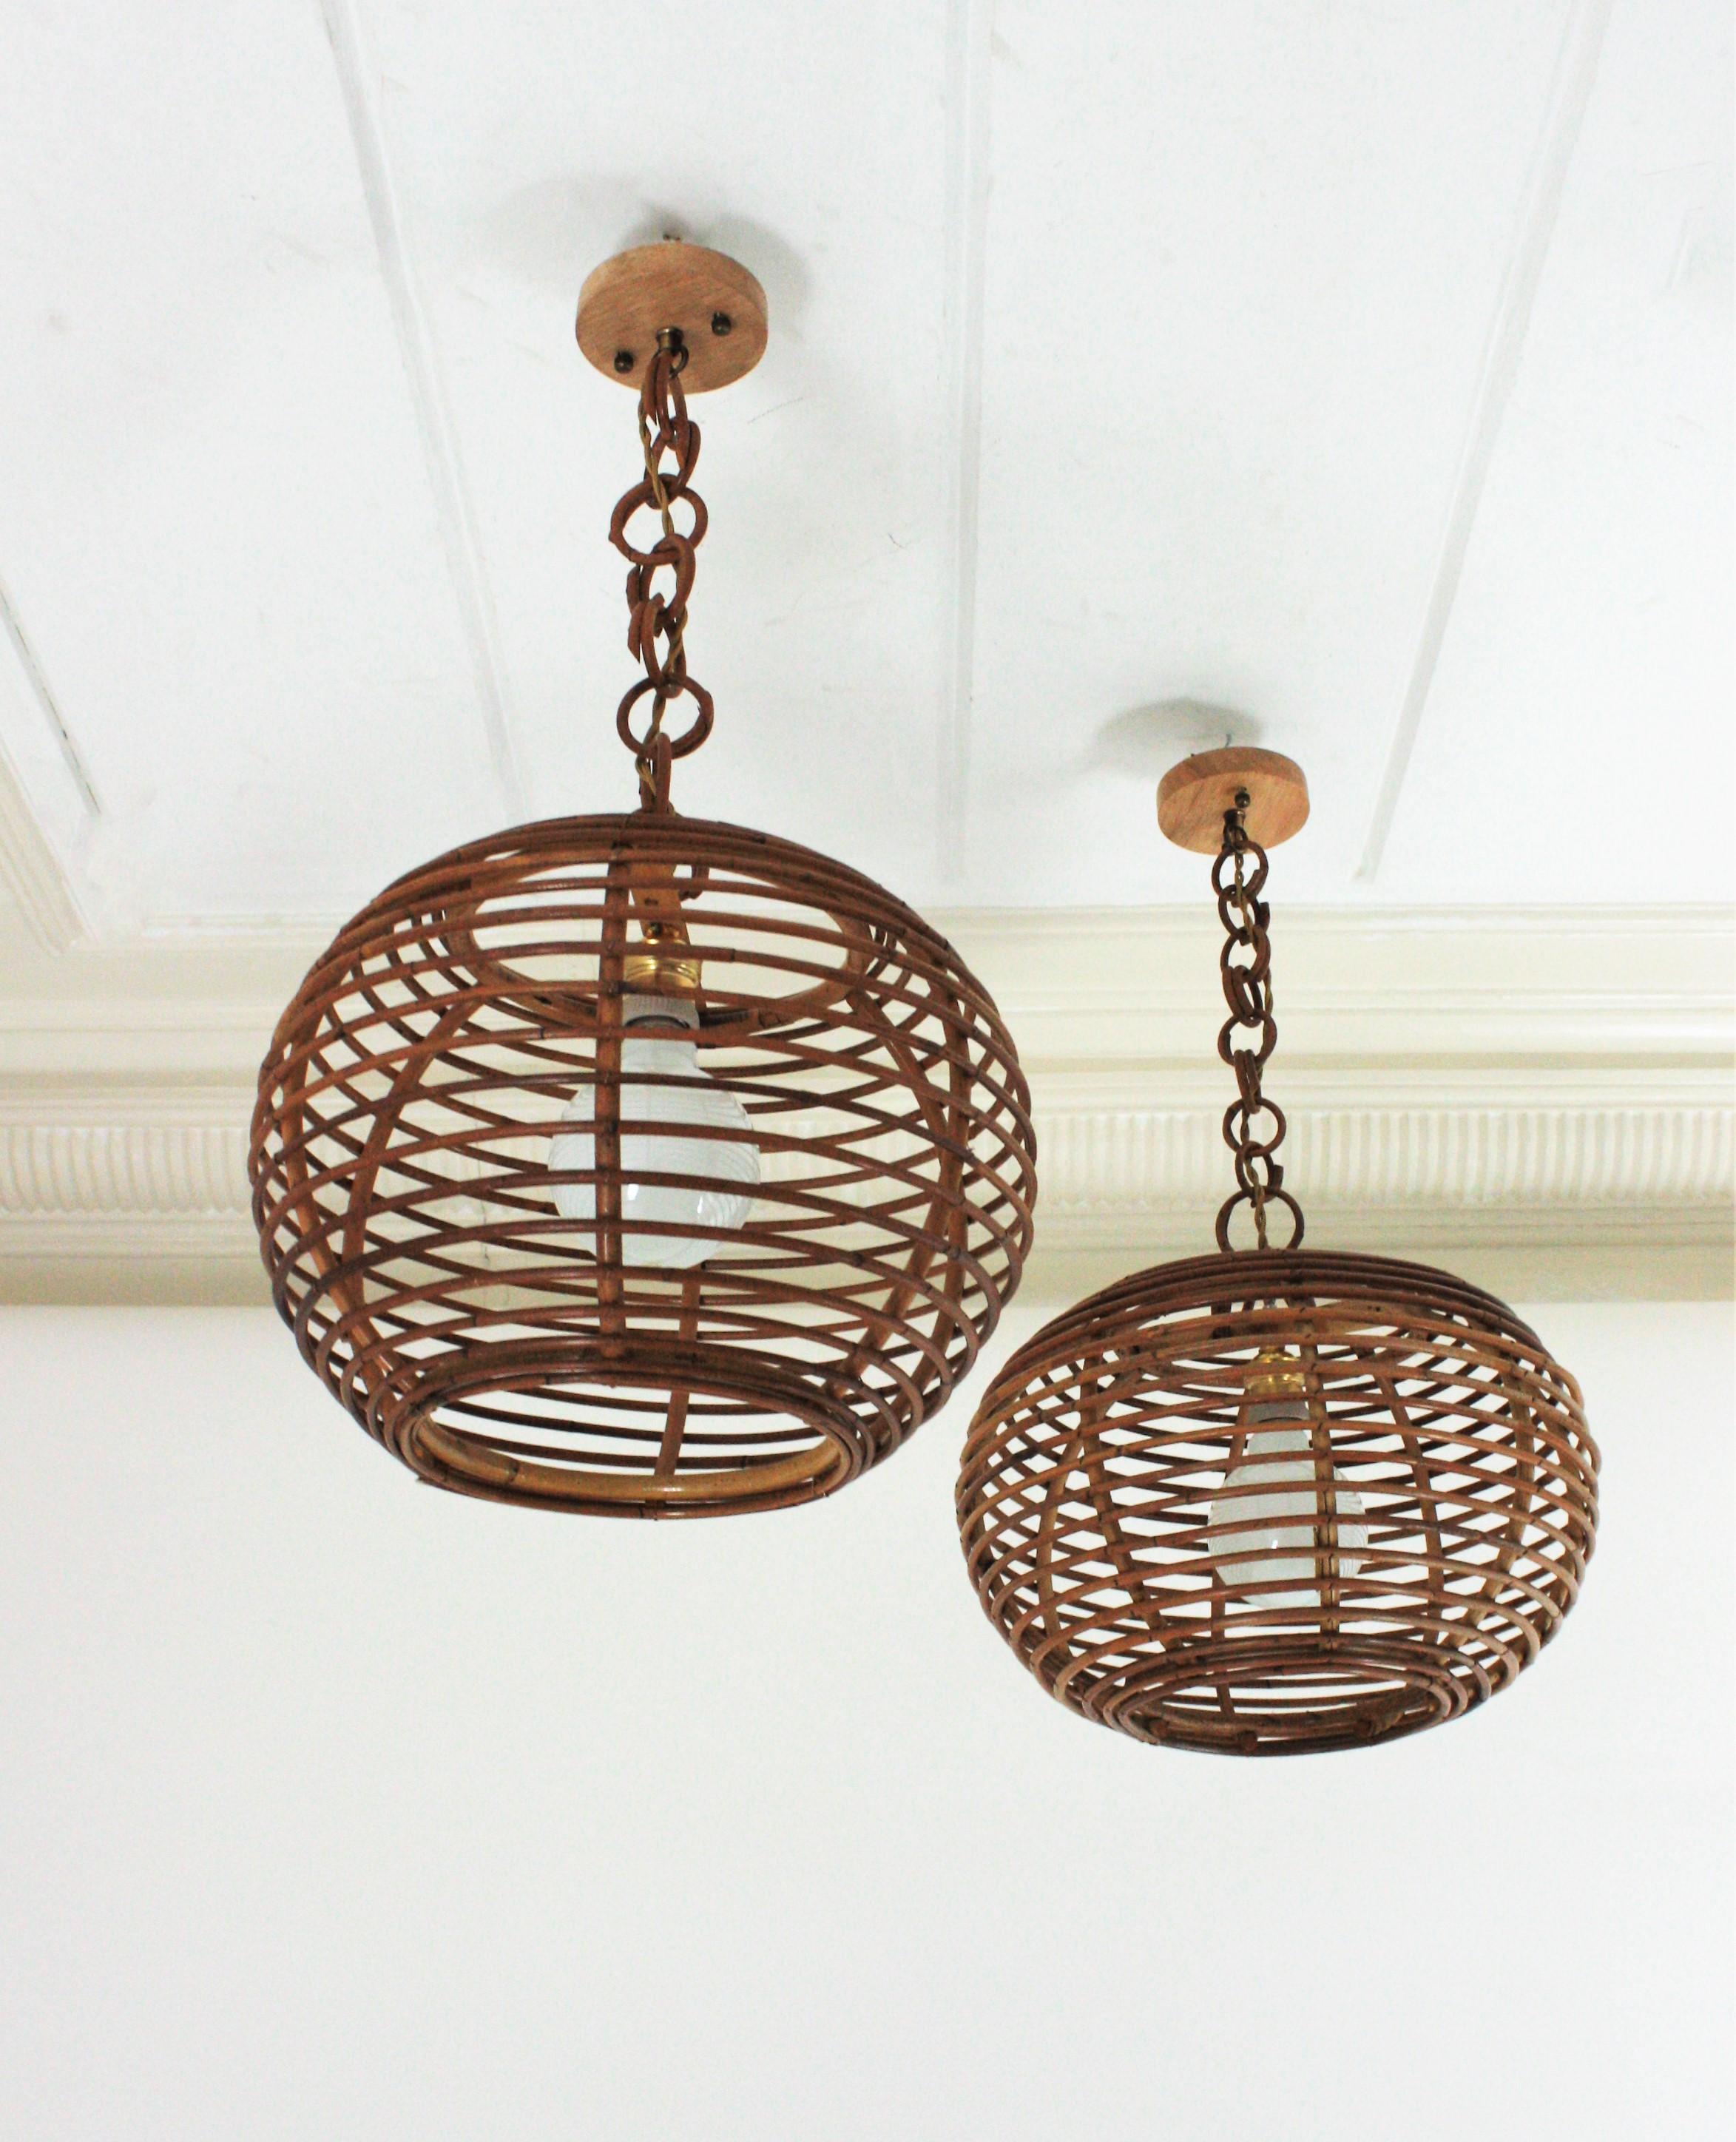 Paire de lanternes en rotin avec abat-jour en forme de globe ou de boule, Espagne, années 1950-1960.
Ces lampes à suspension sont entièrement fabriquées à la main avec du rotin et du bambou. Les abat-jour en forme de boule sont suspendus à des